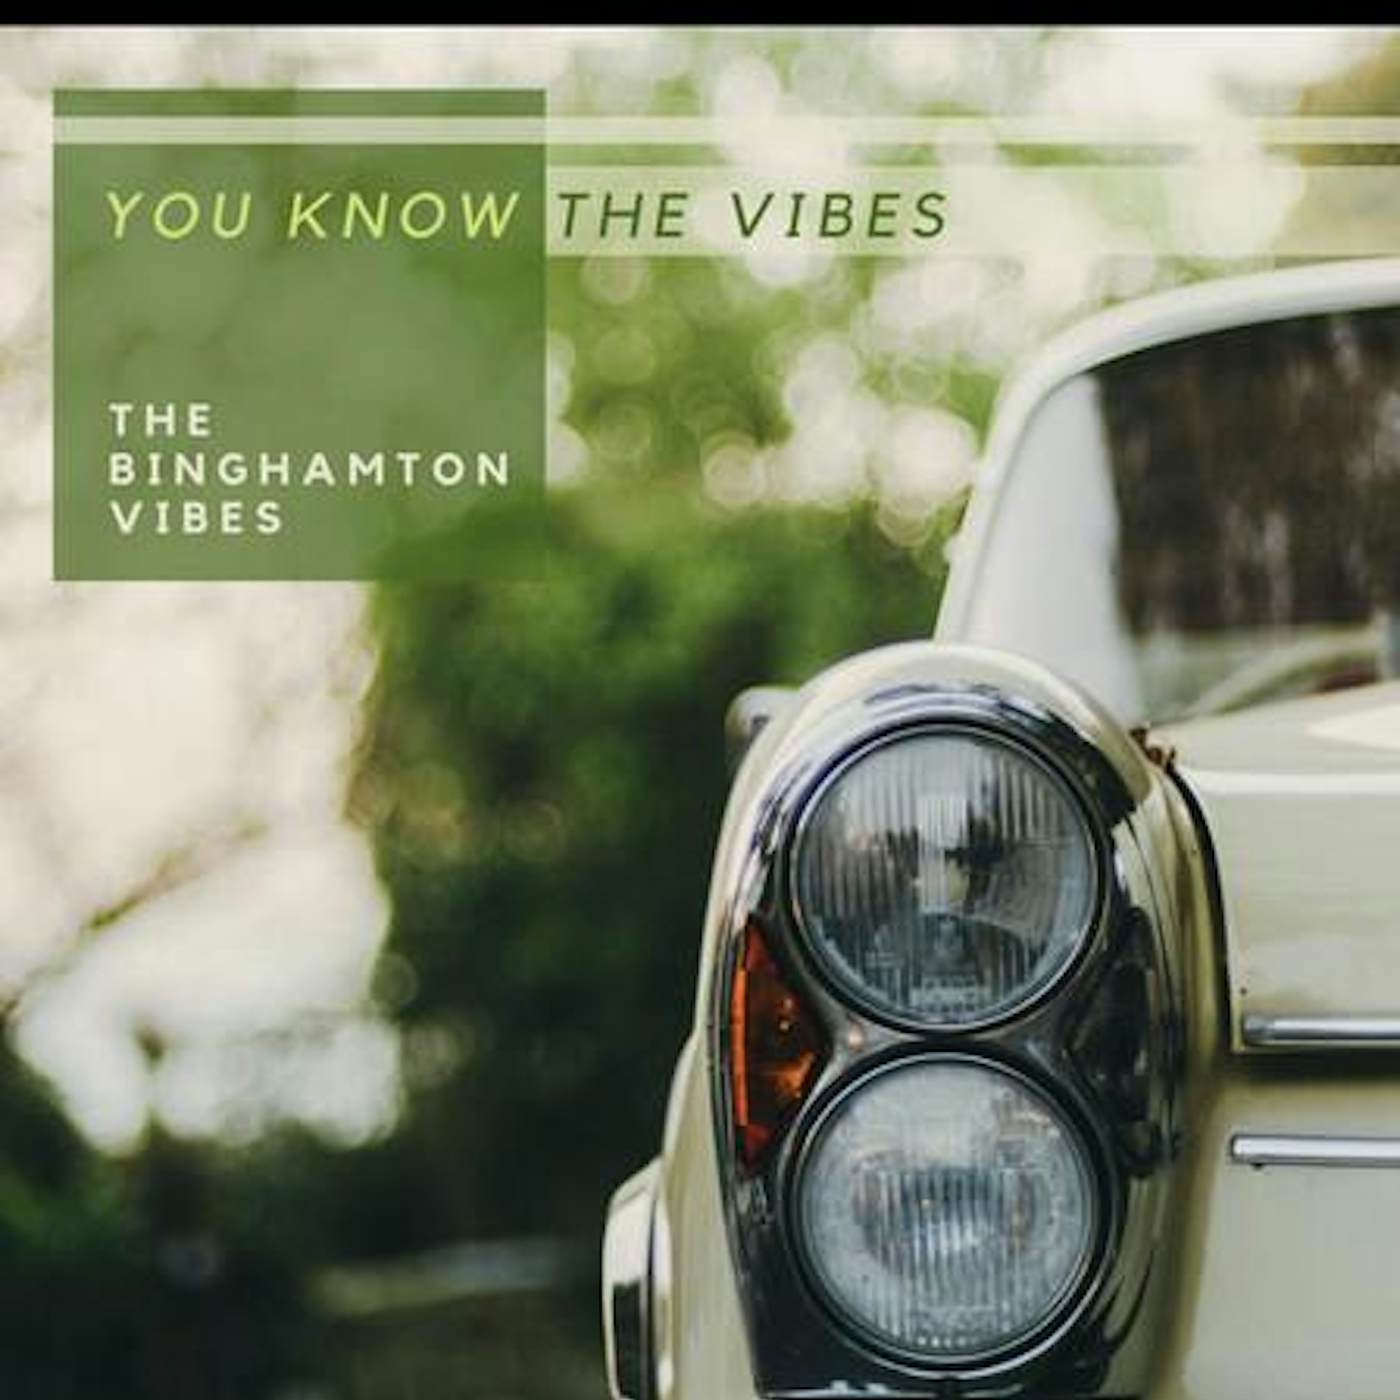 The Binghamton Vibes